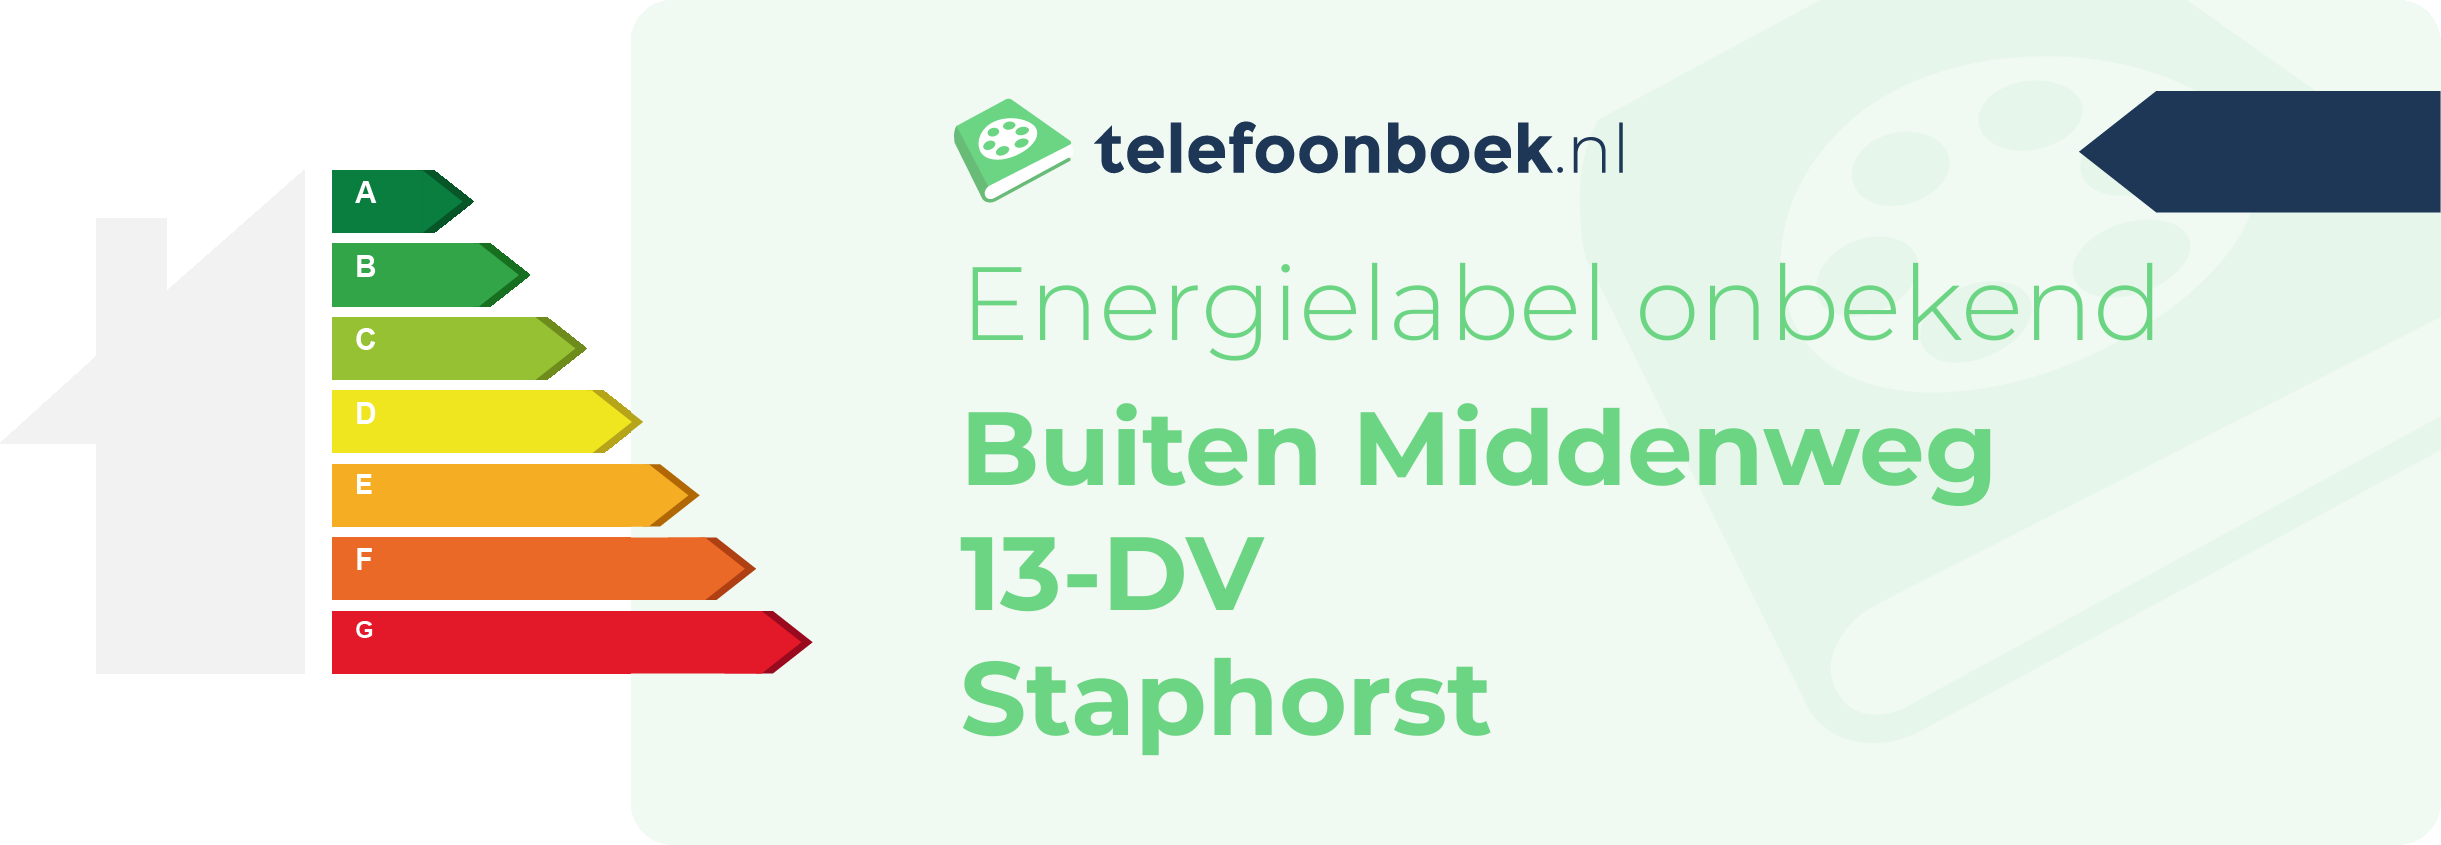 Energielabel Buiten Middenweg 13-DV Staphorst